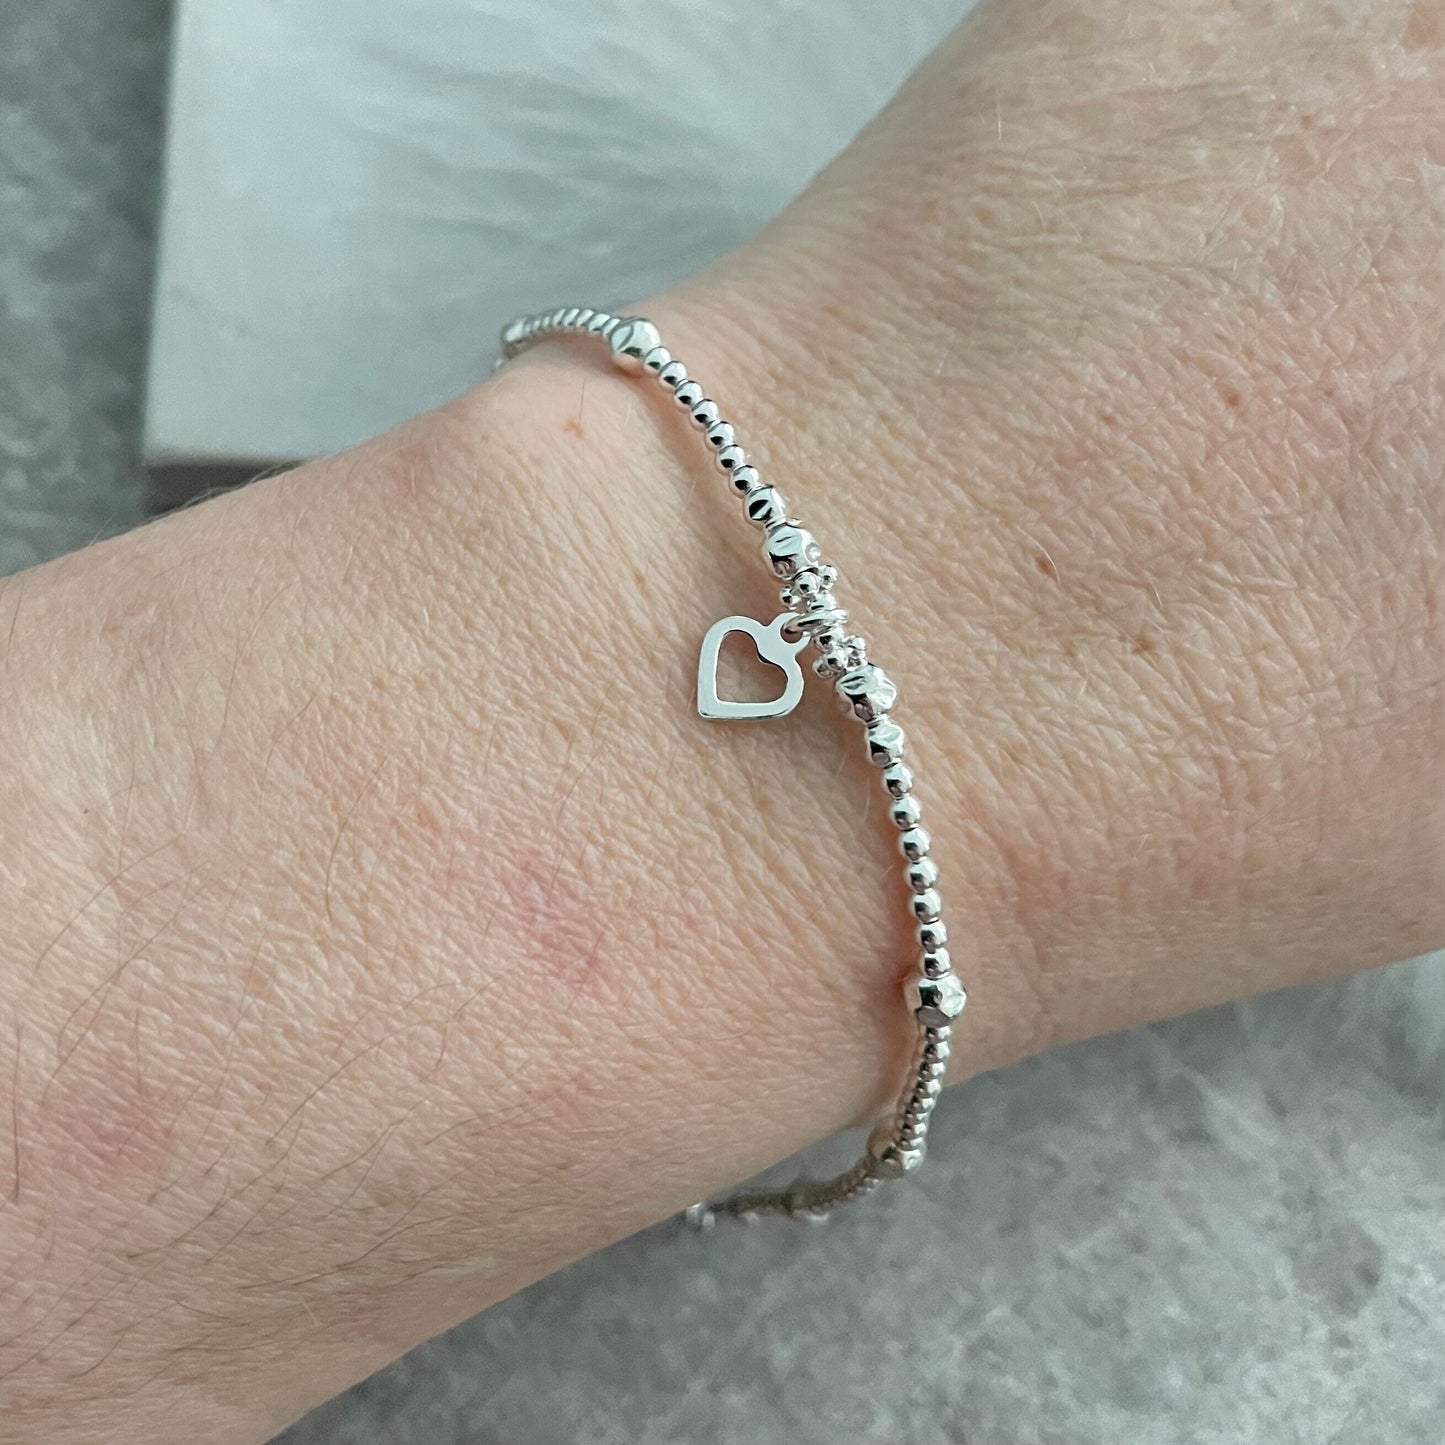 A Dainty Love Heart Charm Bracelet, Bracelet for Wife Girlfriend